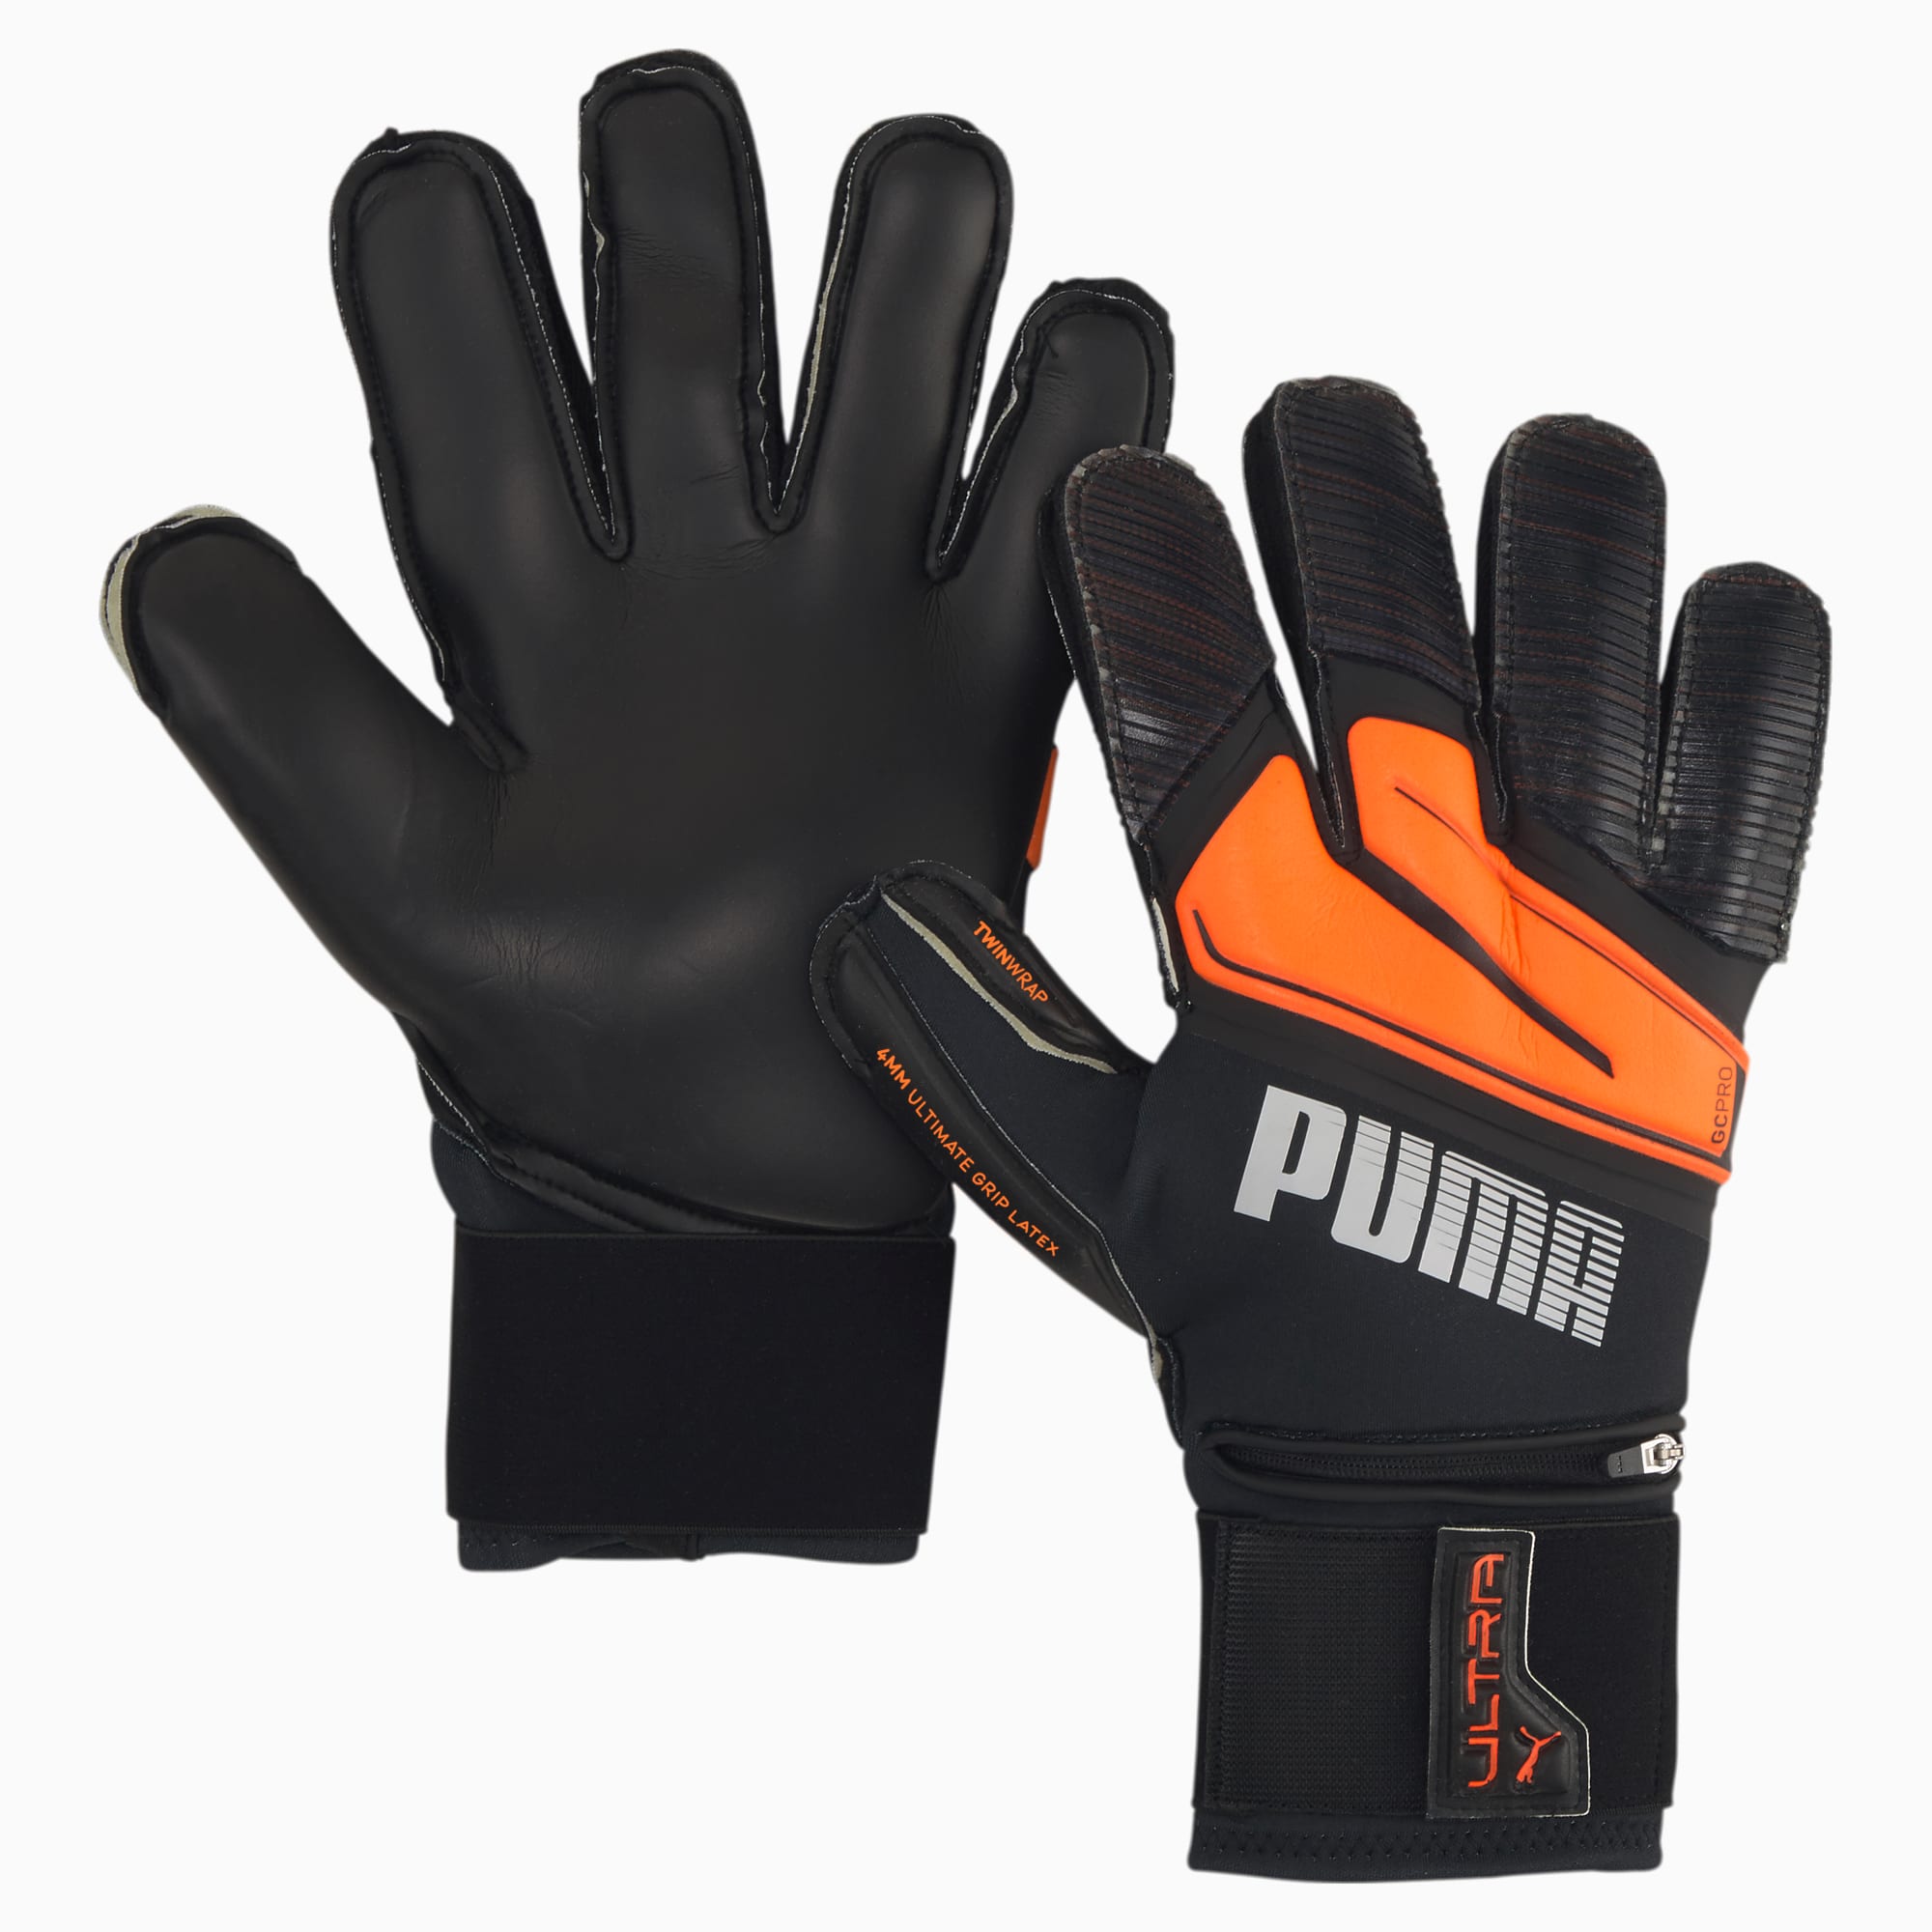 Puma公式 ウルトラ プロテクト 1 Rc サッカー ゴールキーパー グローブ メンズ Shocking Orange White Black プーマ サッカー プーマ